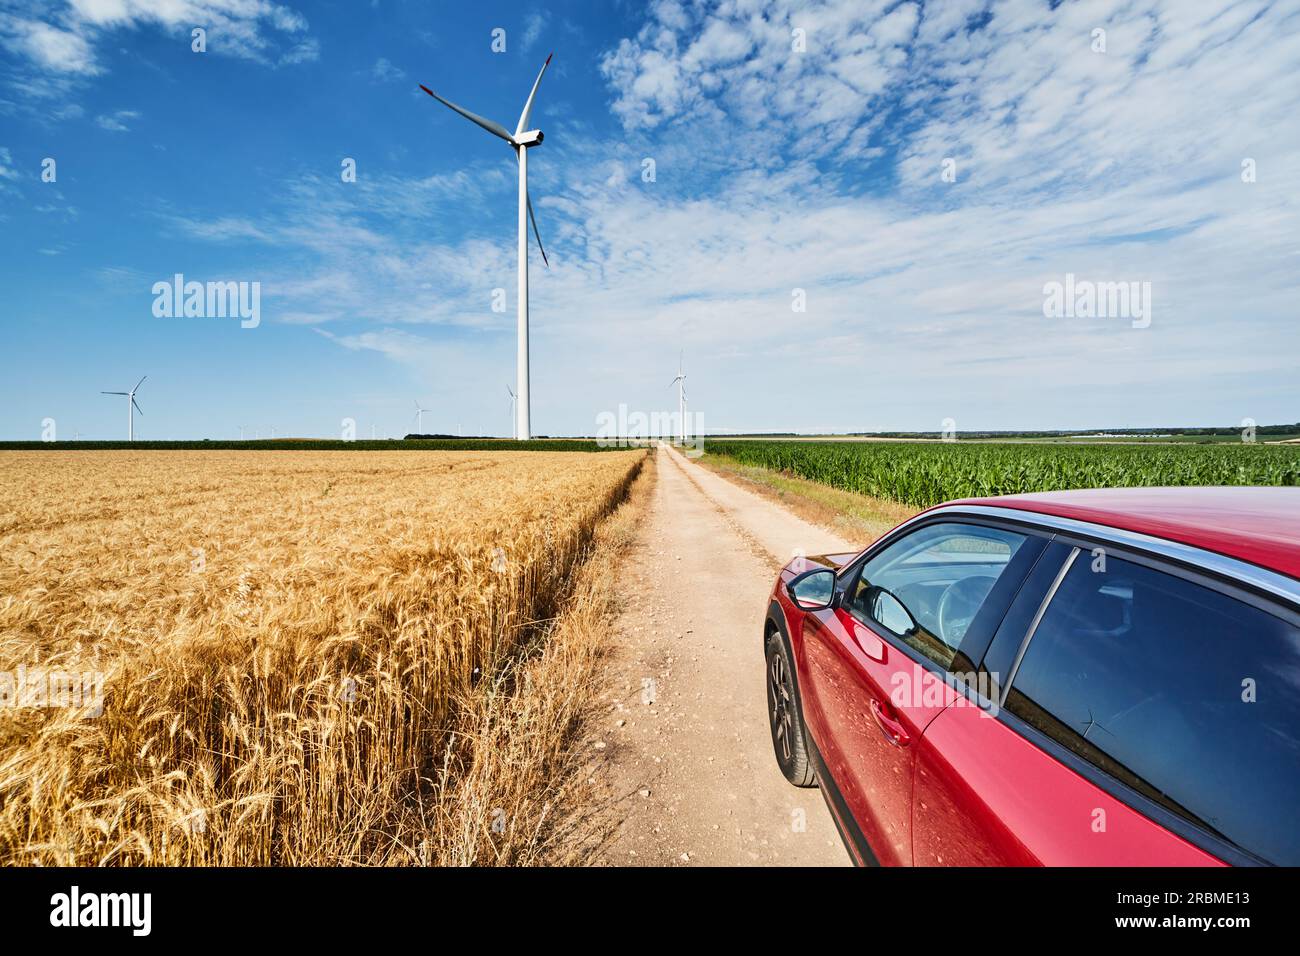 Paesaggio rurale con turbine eoliche, strada di campagna tra campi coltivati e auto rossa Foto Stock